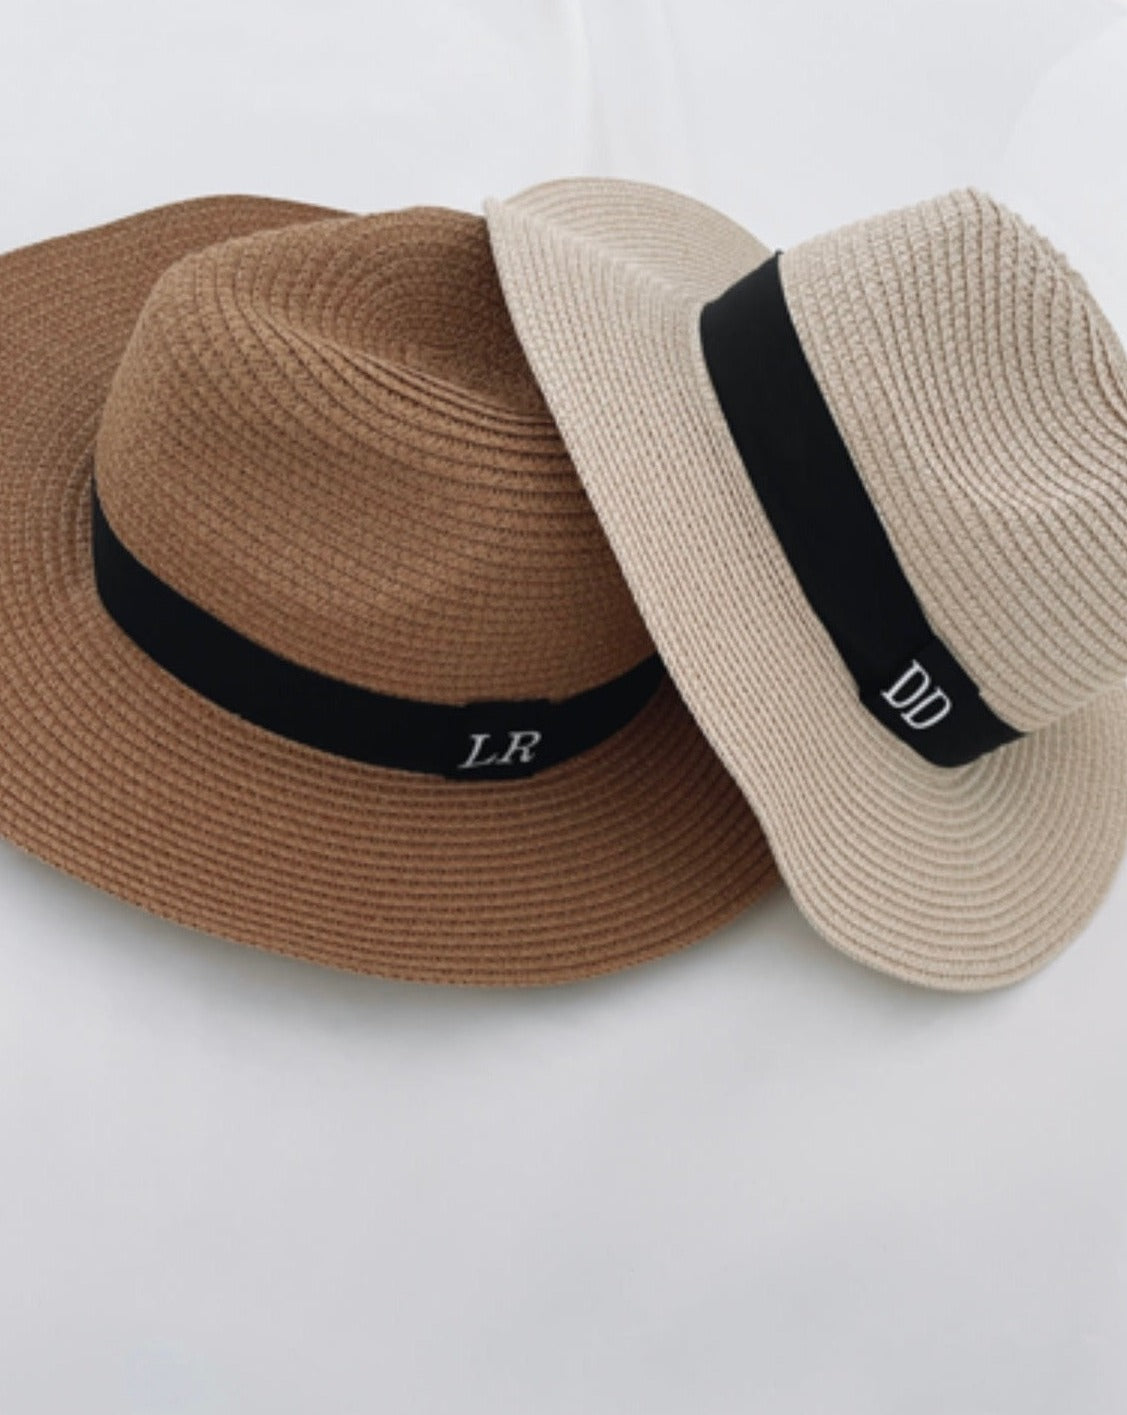 Personalised Fedora Straw Beach Hat